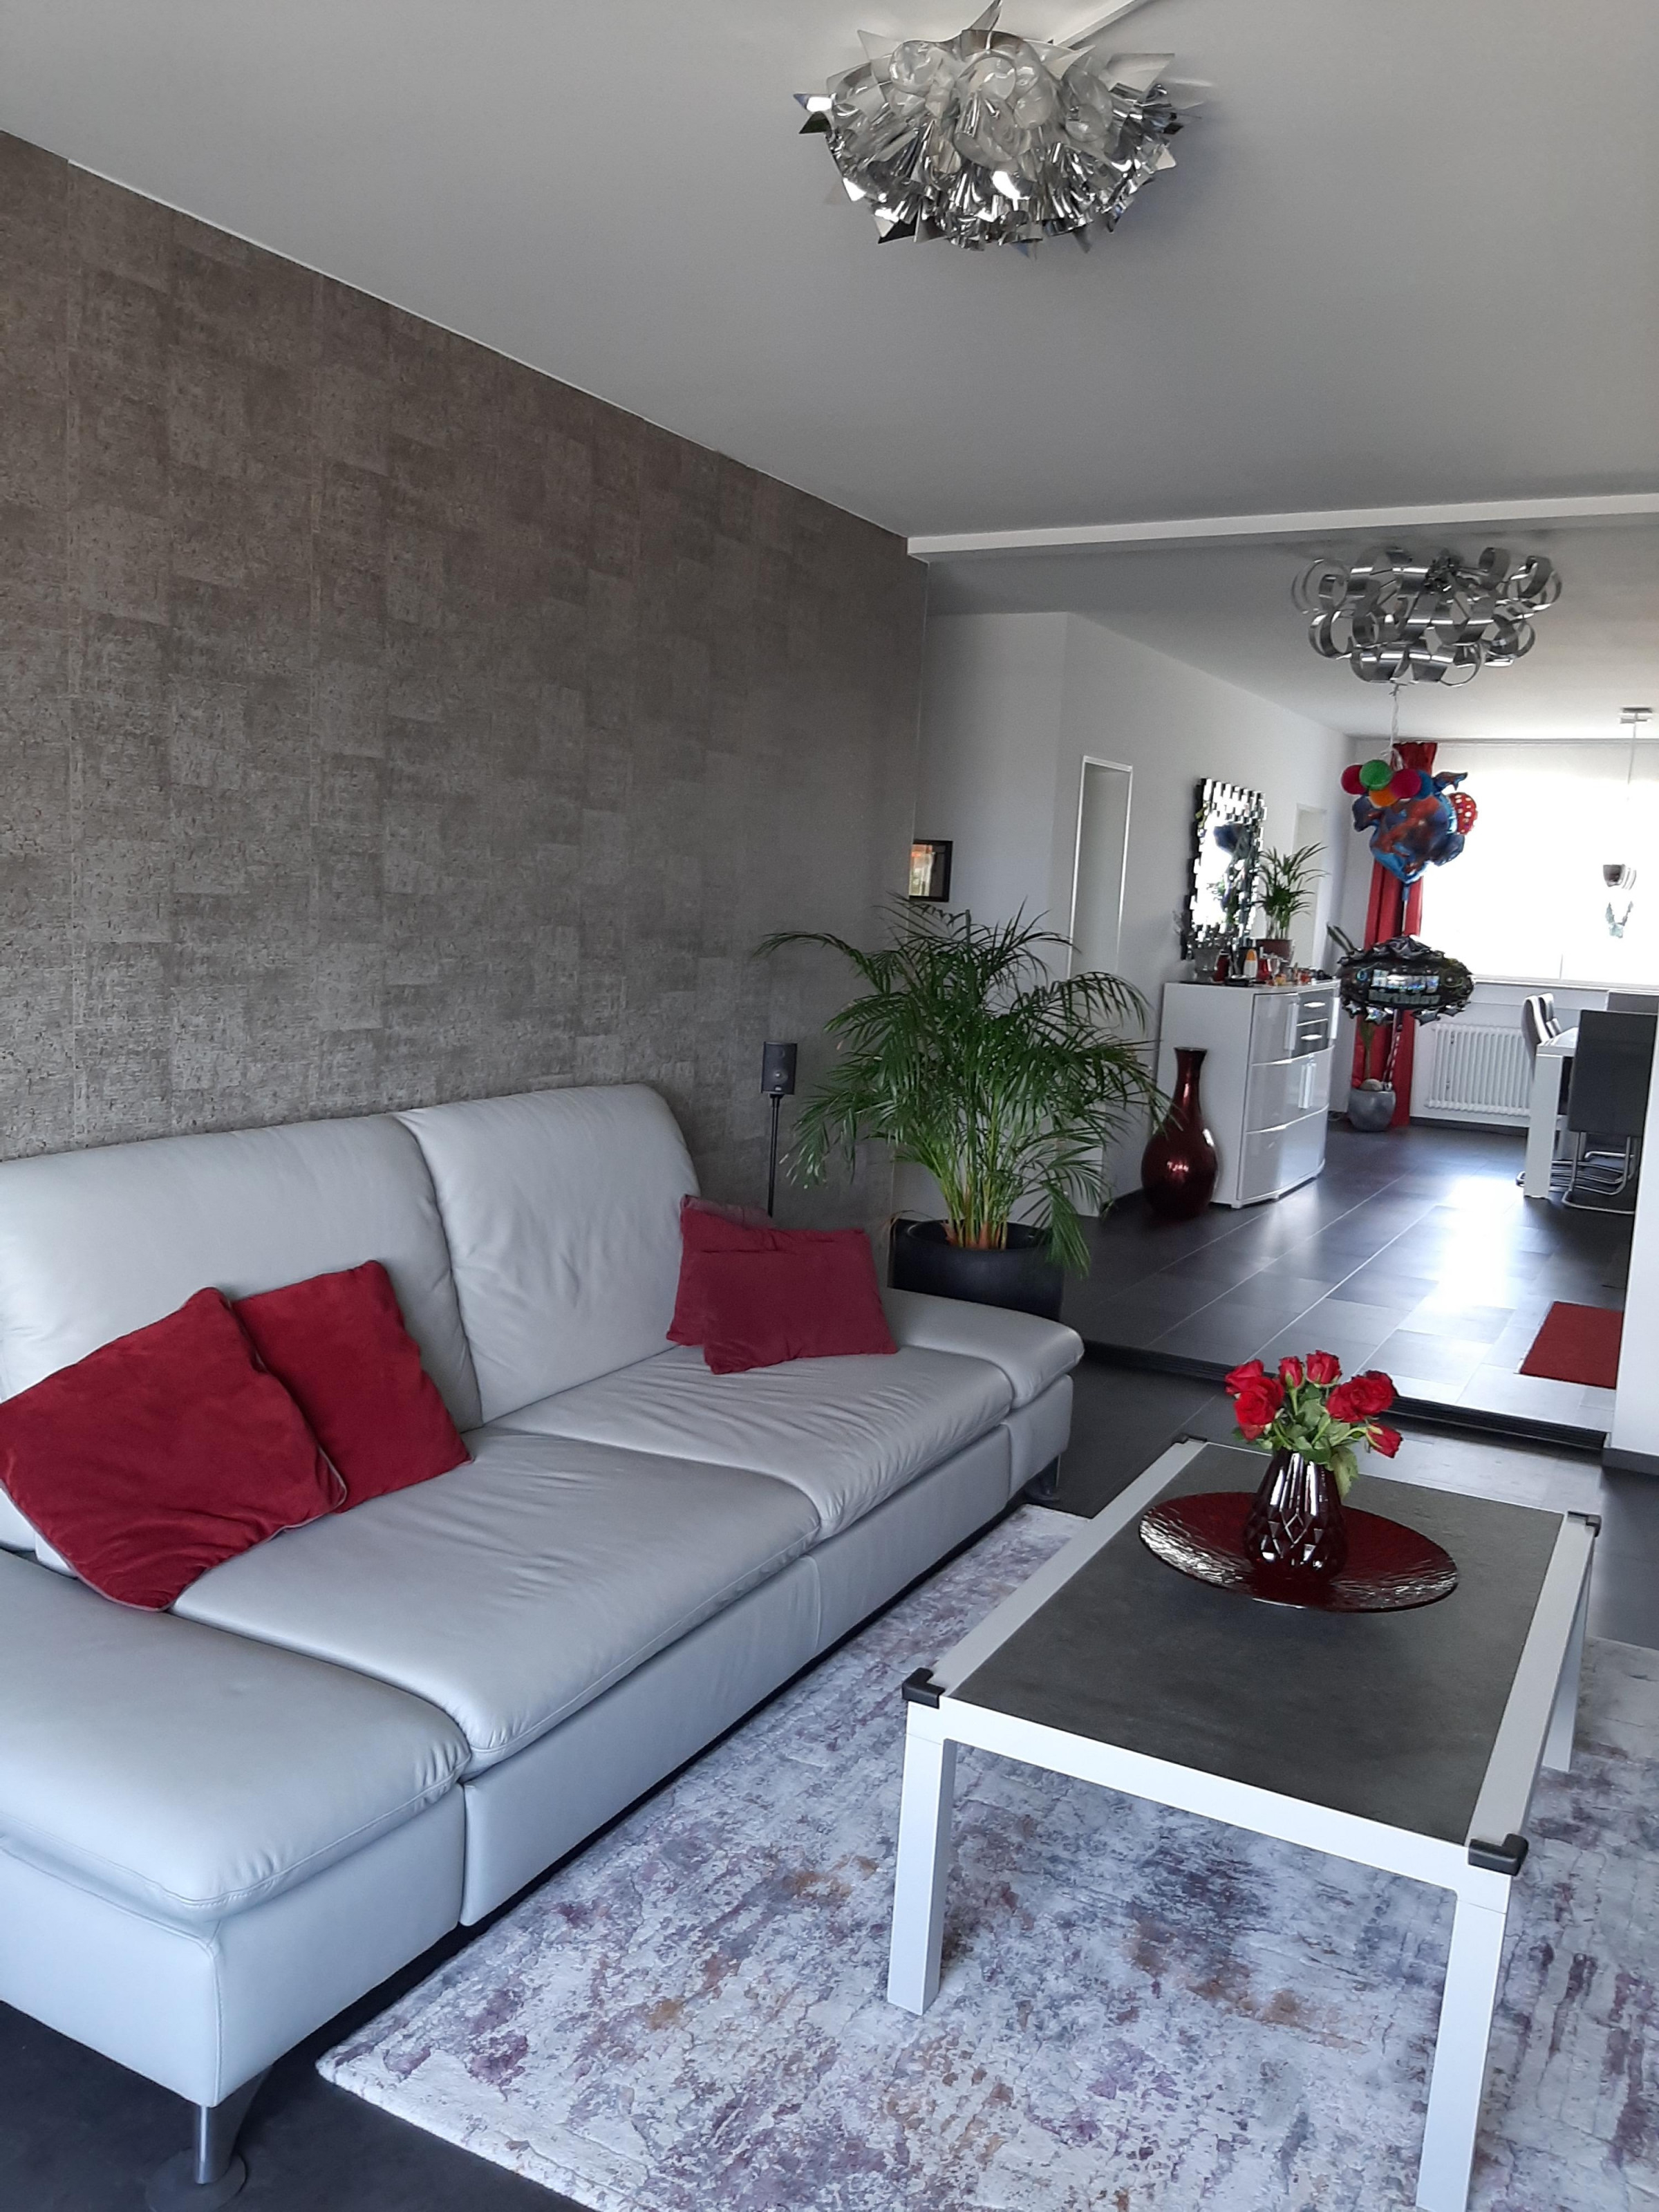 Tapeten Ideen Für Die Wandgestaltung Bei Couch von Tapeten Vorschläge Wohnzimmer Photo